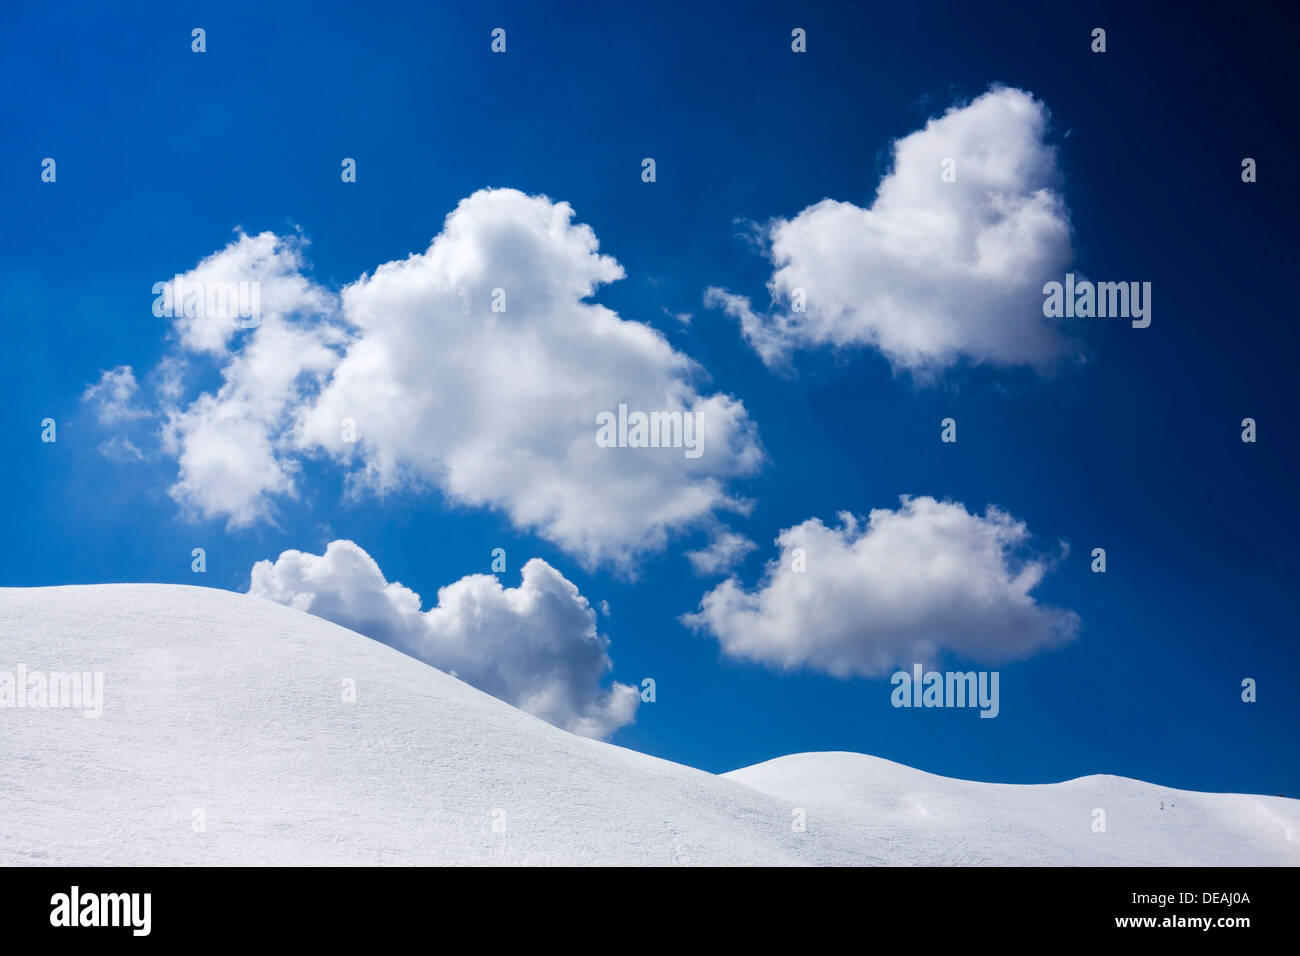 Las nubes blancas en el cielo azul, la cresta de Creste de Zonia encima de Passo Giau o Giau Pass, Dolomitas, Italia, Europa Foto de stock